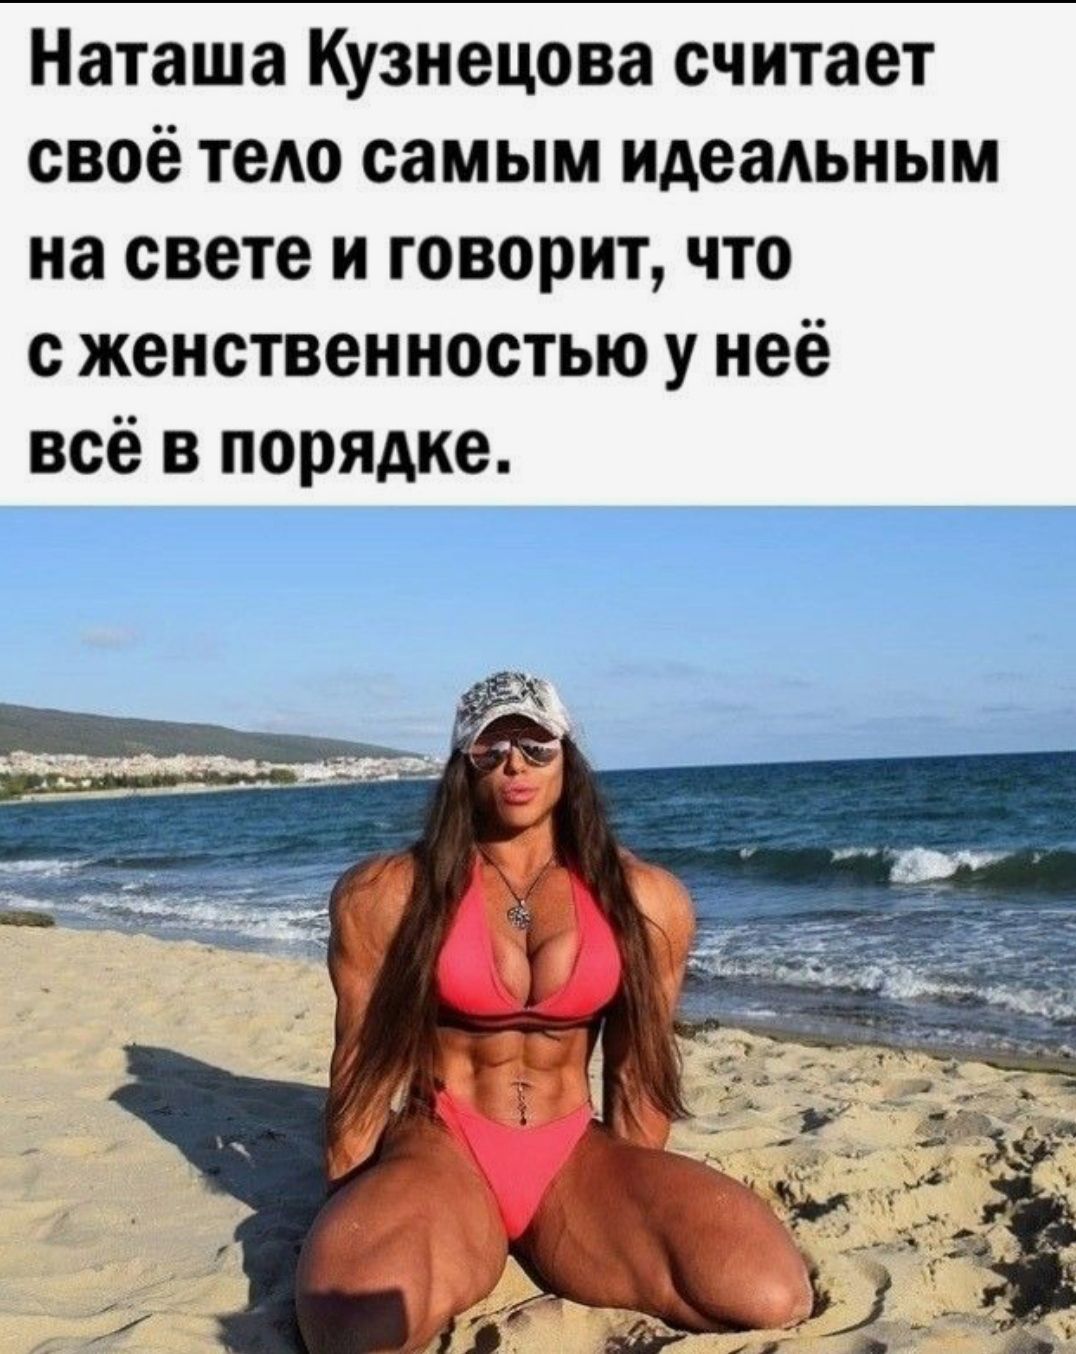 Наташа Кузнецова считает своё тело самым идеальным на свете и говорит что с женственностью у неё всё в порядке